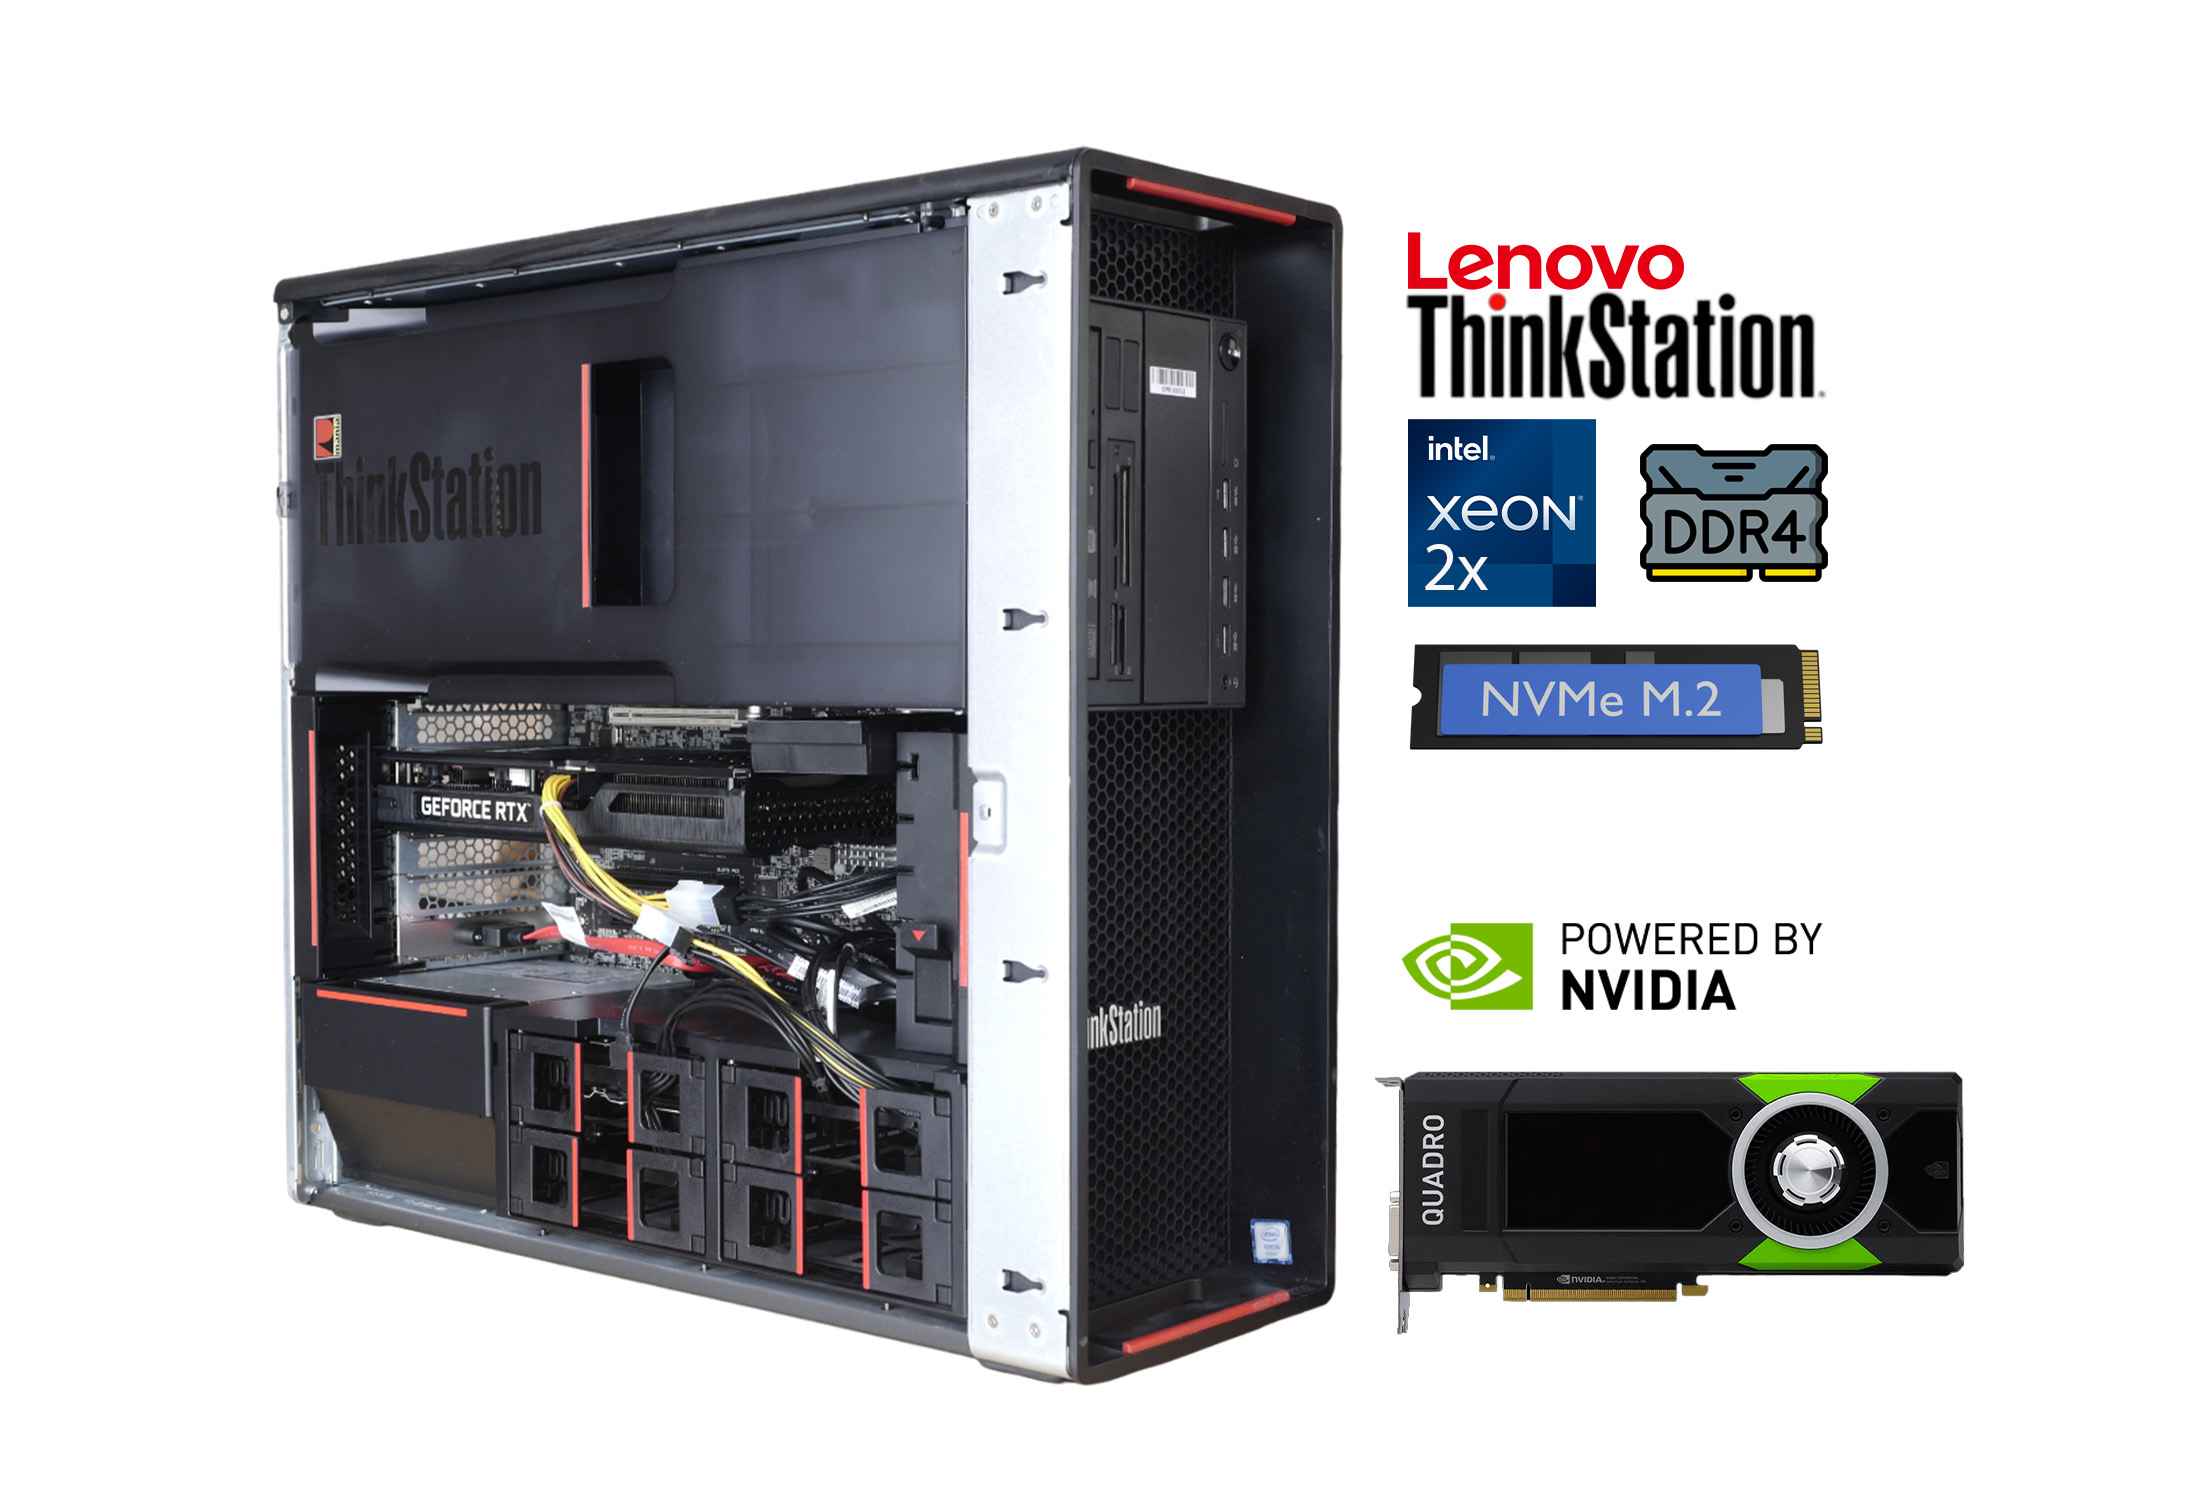 Lenovo Thinkstation P700 2x Xeon E5-2687W v3 DDR4 NVMe Quadro P2000